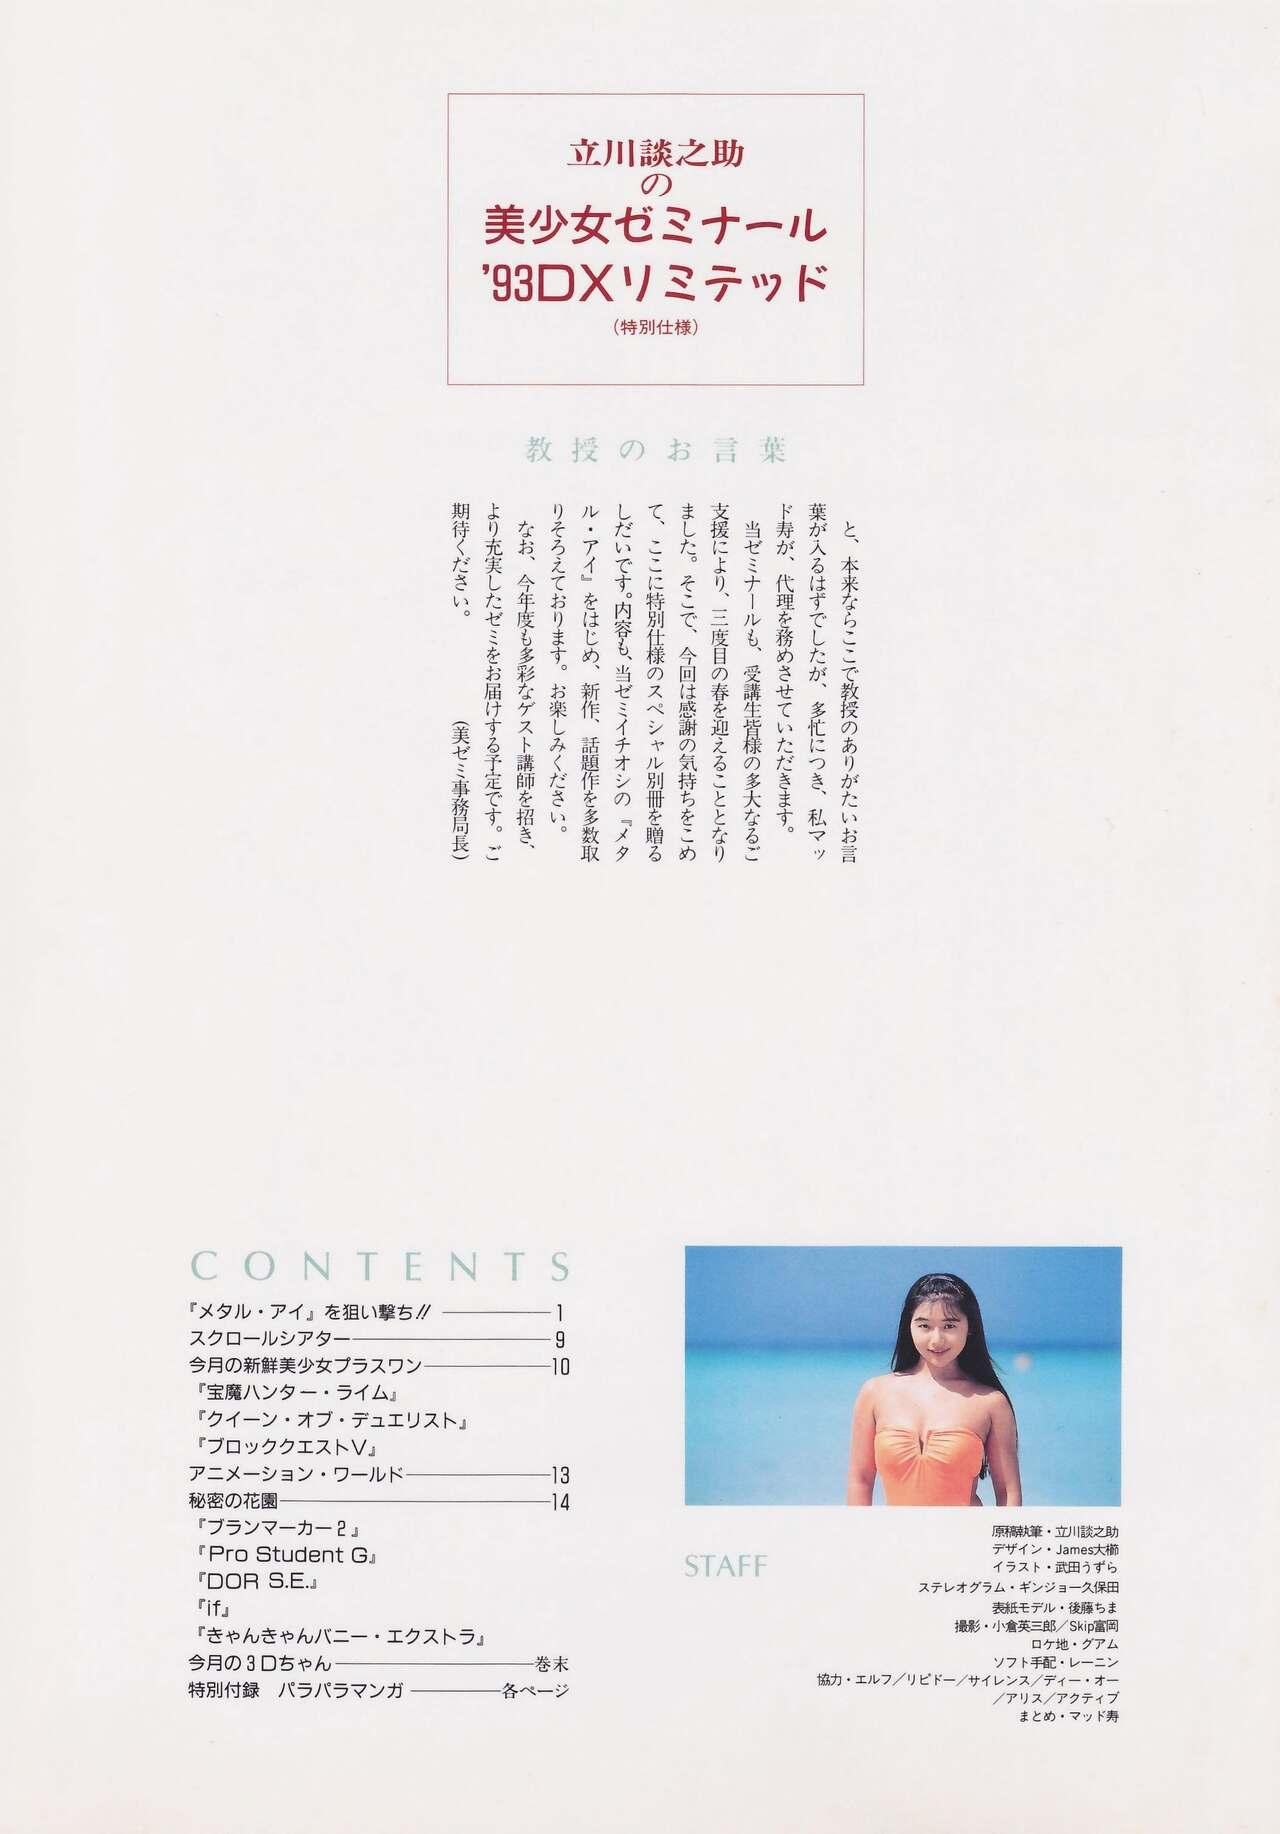 Plump Bishoujo Seminar '93 DX Limited Piercing - Page 2